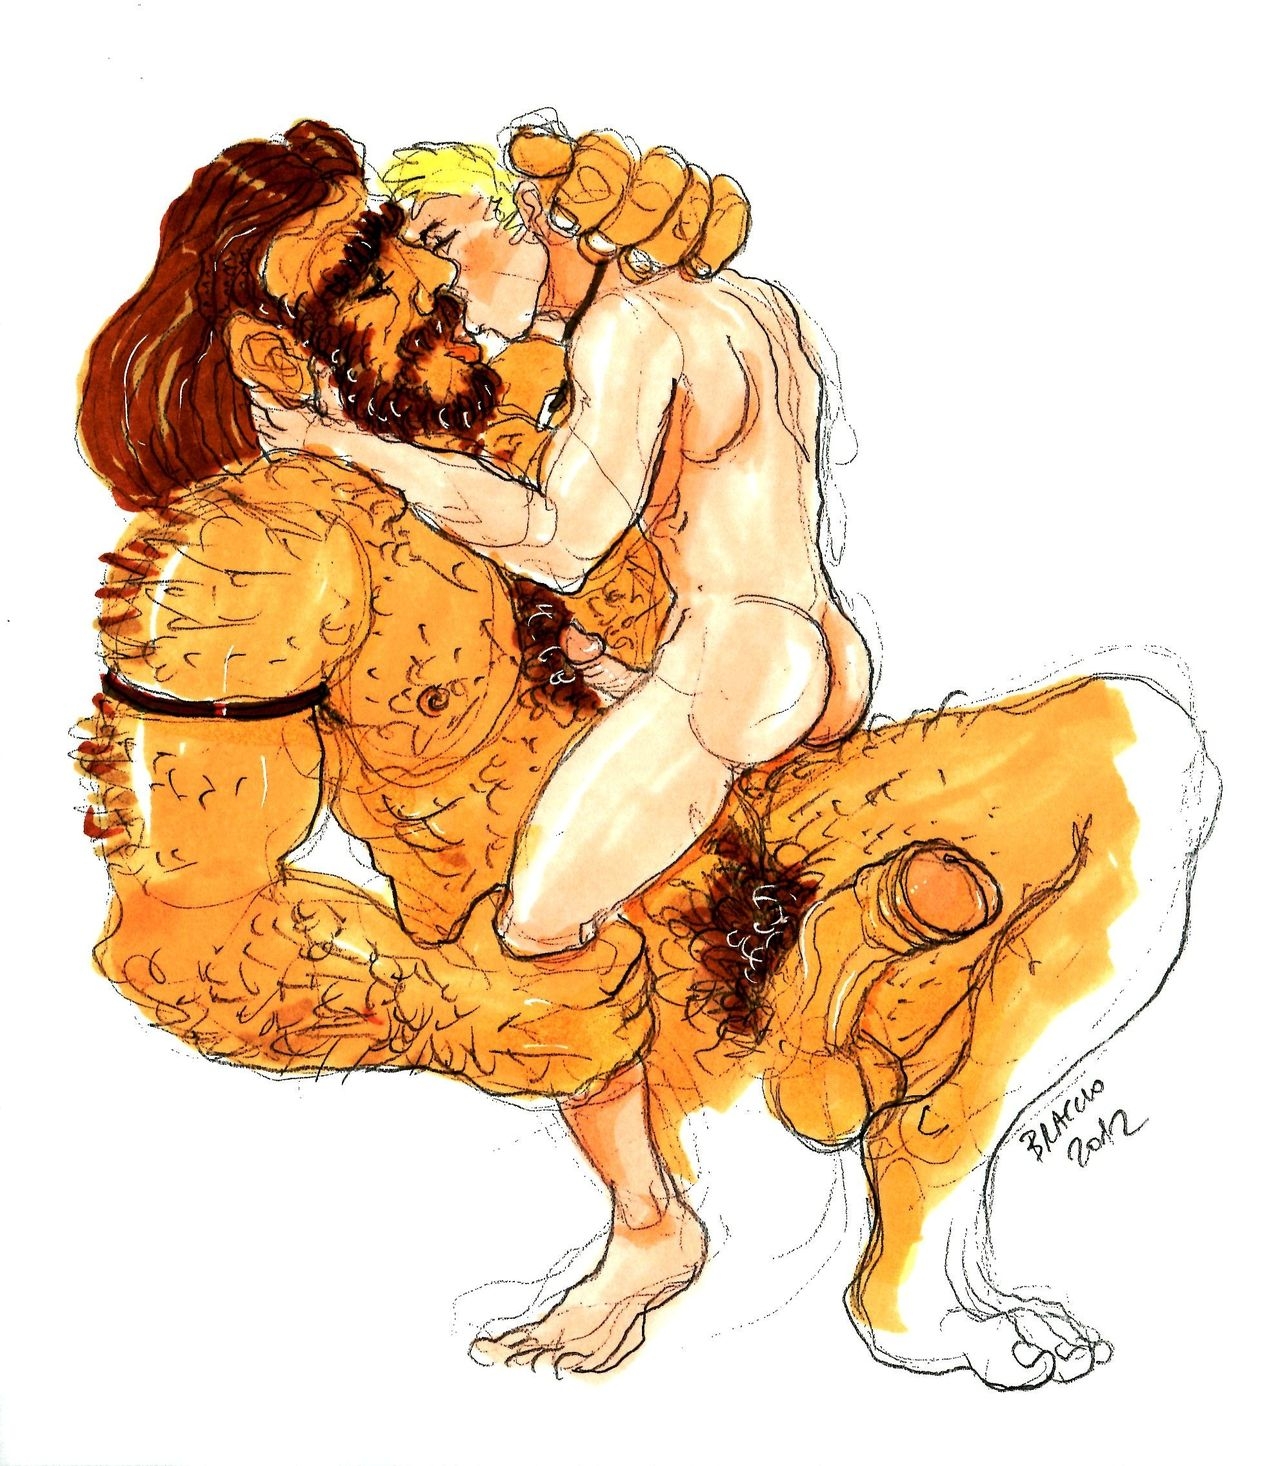 gay stone age: when a Sapiens loves a Neanderthal 8